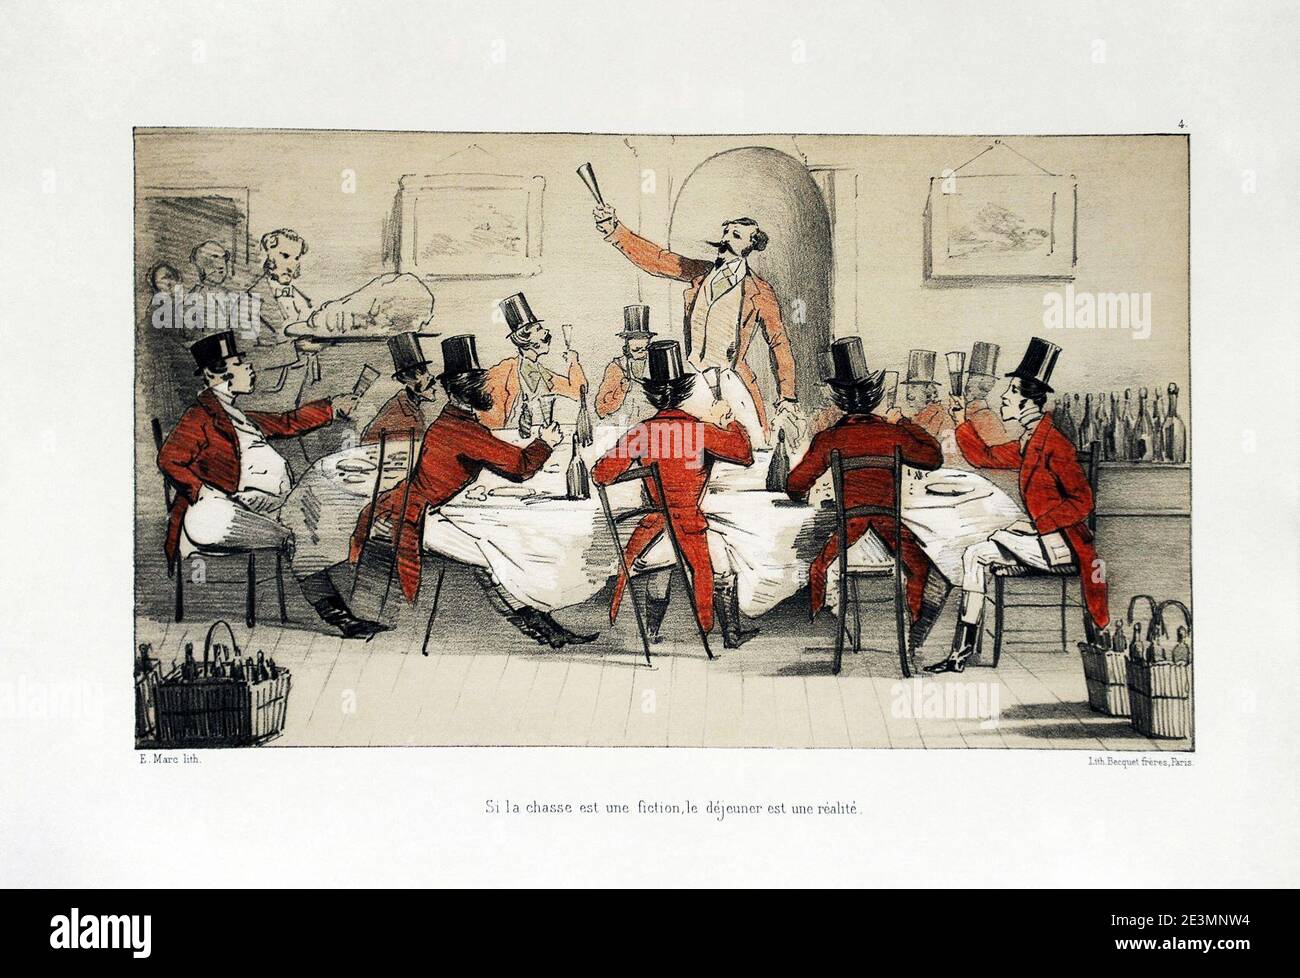 MARC Pierre-Eugène (1819-1885), ''Si la chasse est une fiction, le déjeuner est une réalité'', Croquis de chasse le drag de Pau. Planche 4, 1er éd. Becquet Frères, Paris, 1860. Stock Photo